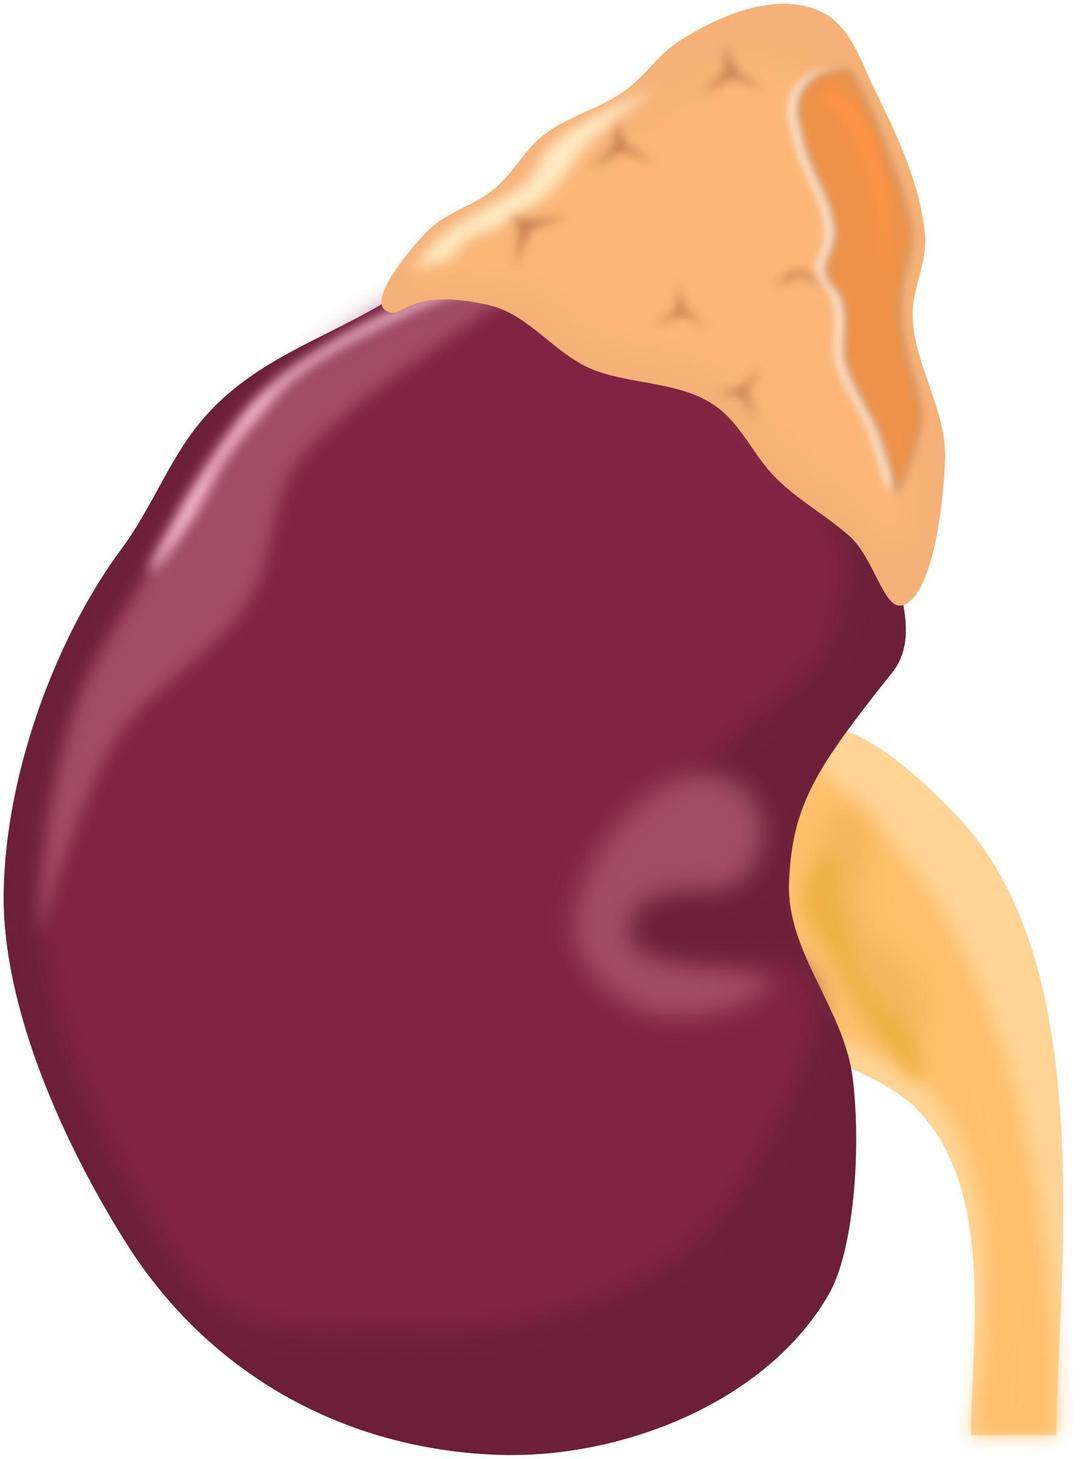 Kidney png transparent